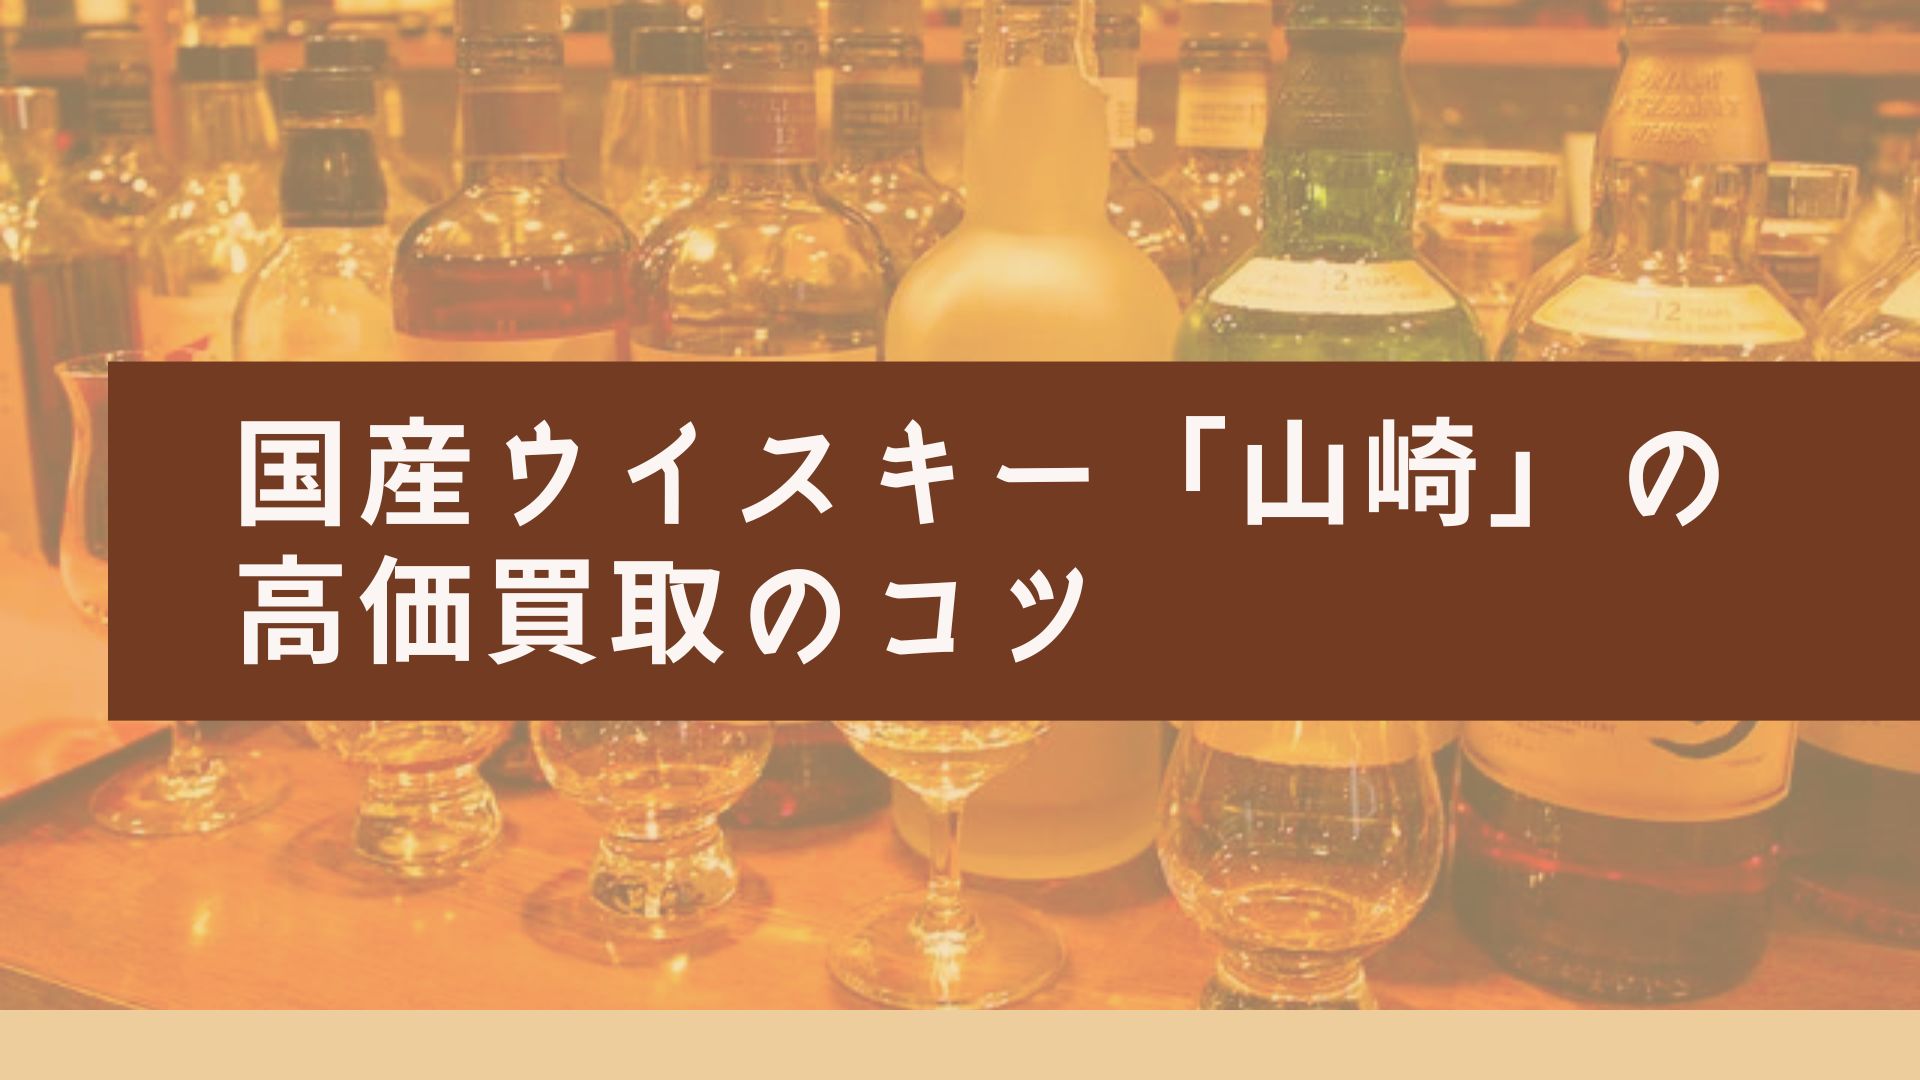 国産ウイスキー「山崎」を〇〇万円で売る方法と高額買取のコツ - 買取